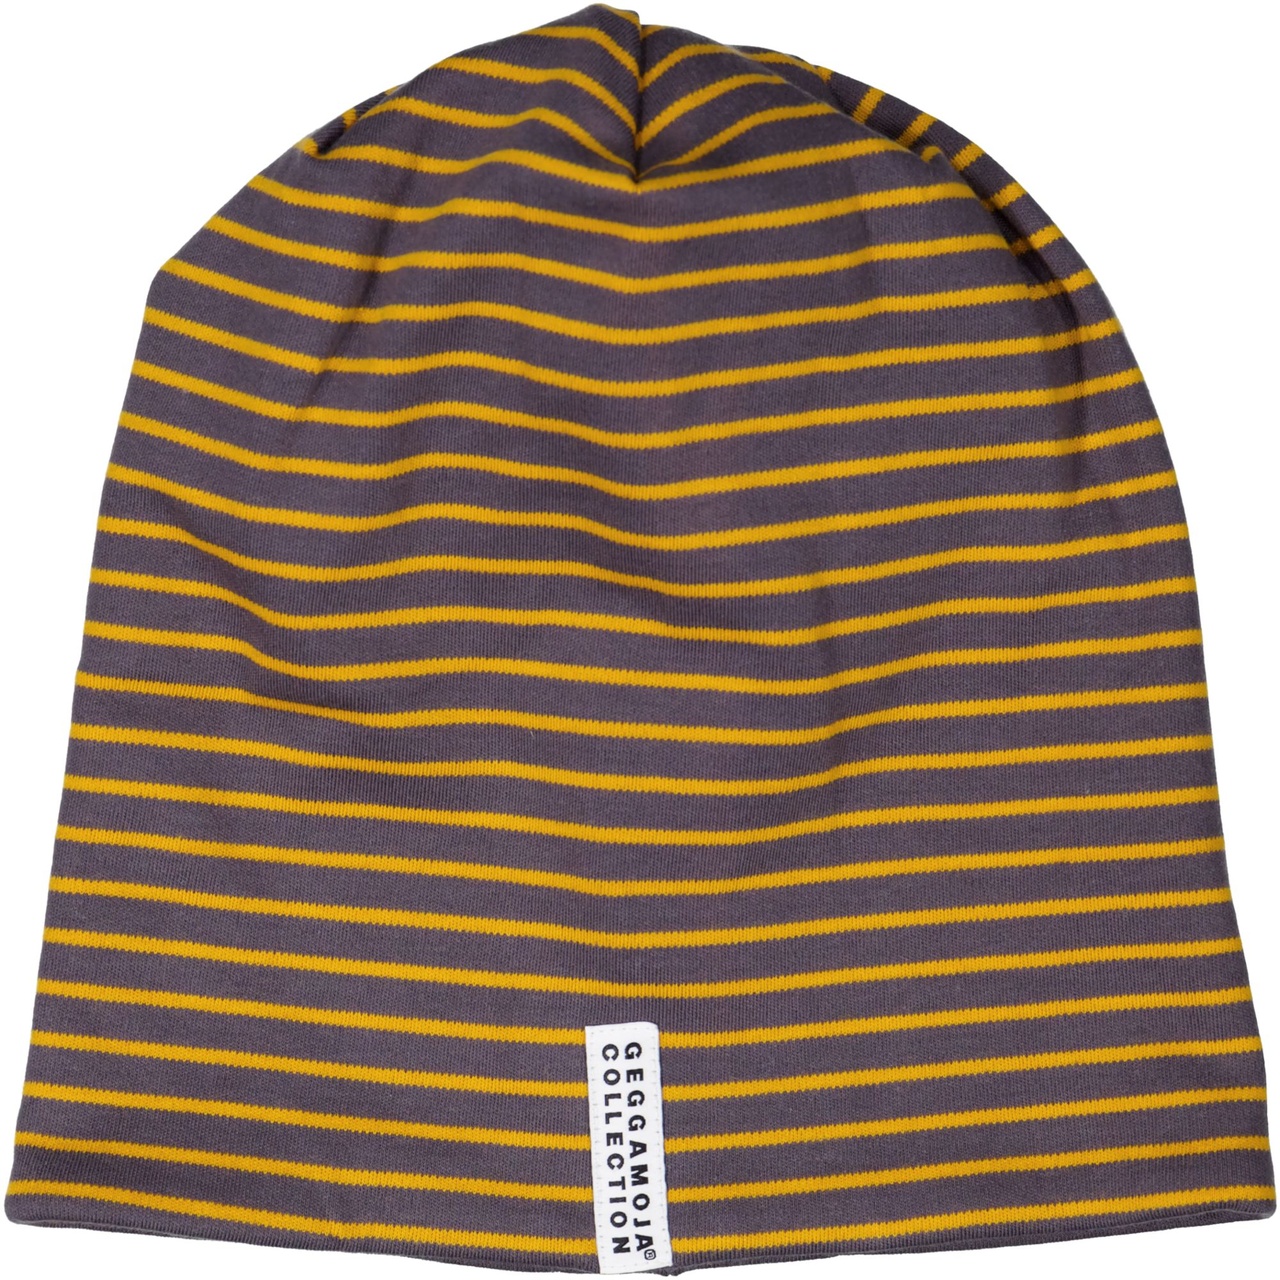 Topline cap grey/orange stripe